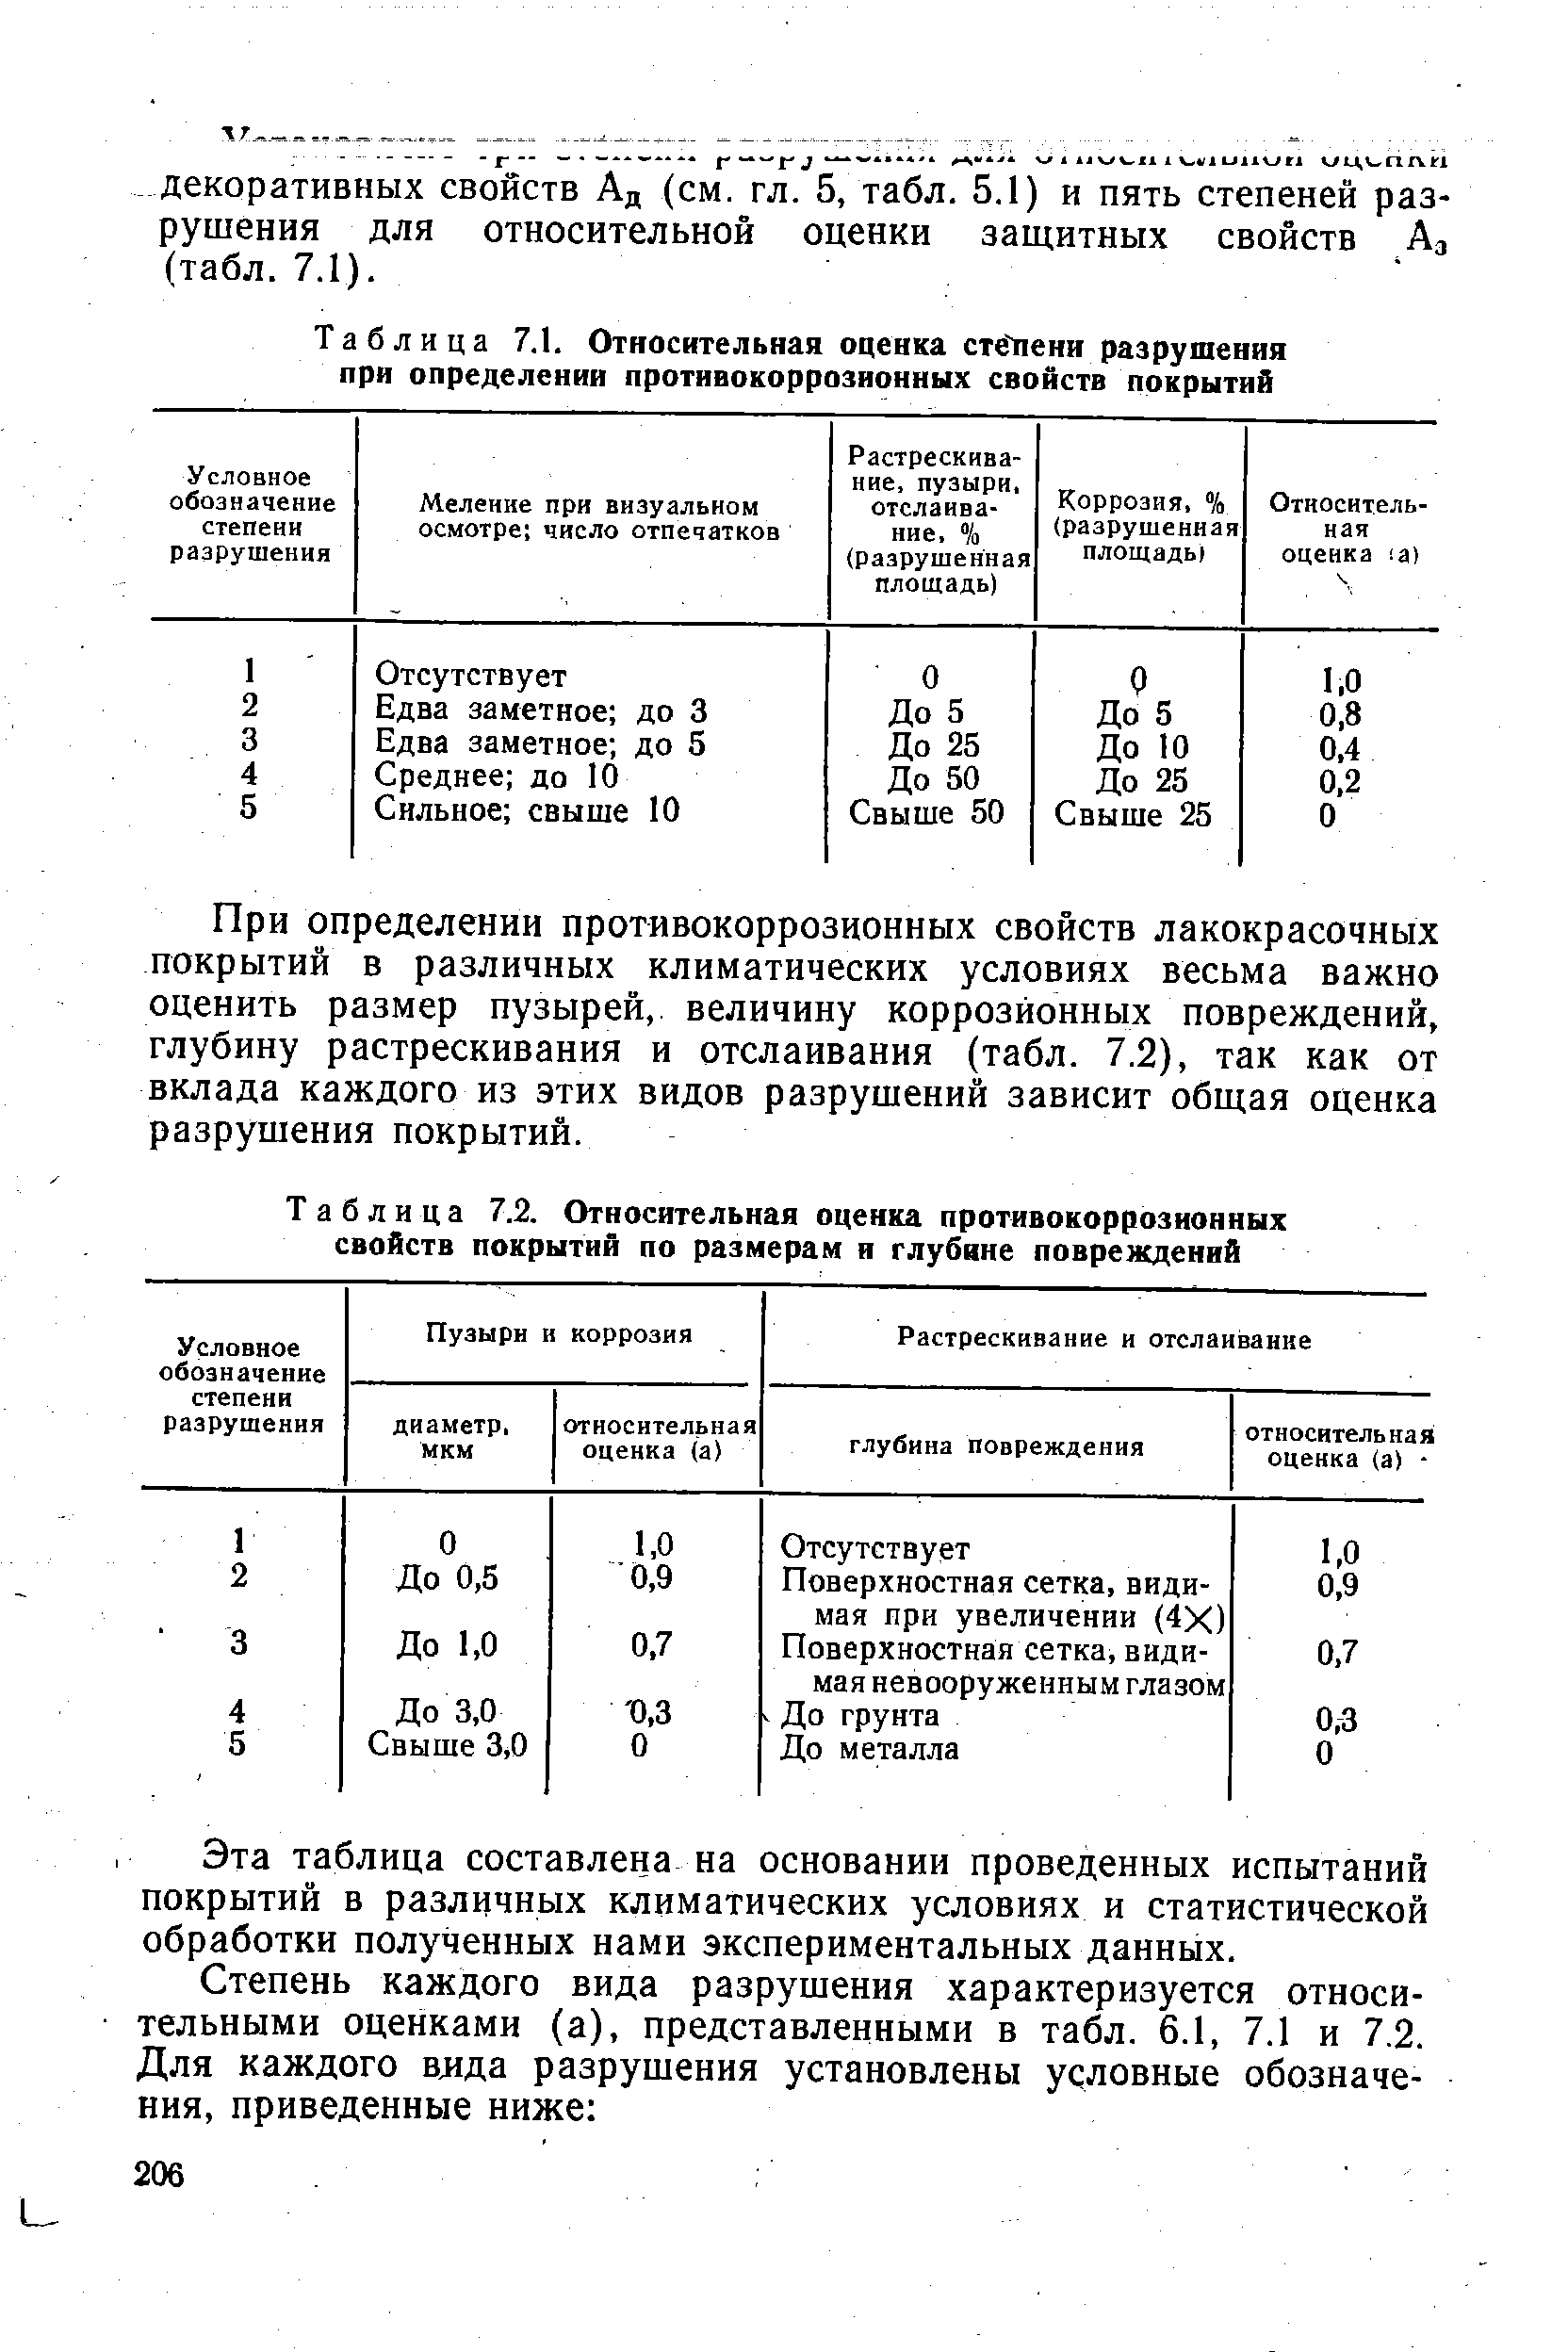 Таблица 7.1. Относительная оценка стёлени разрушения при определении противокоррозионных свойств покрытий
